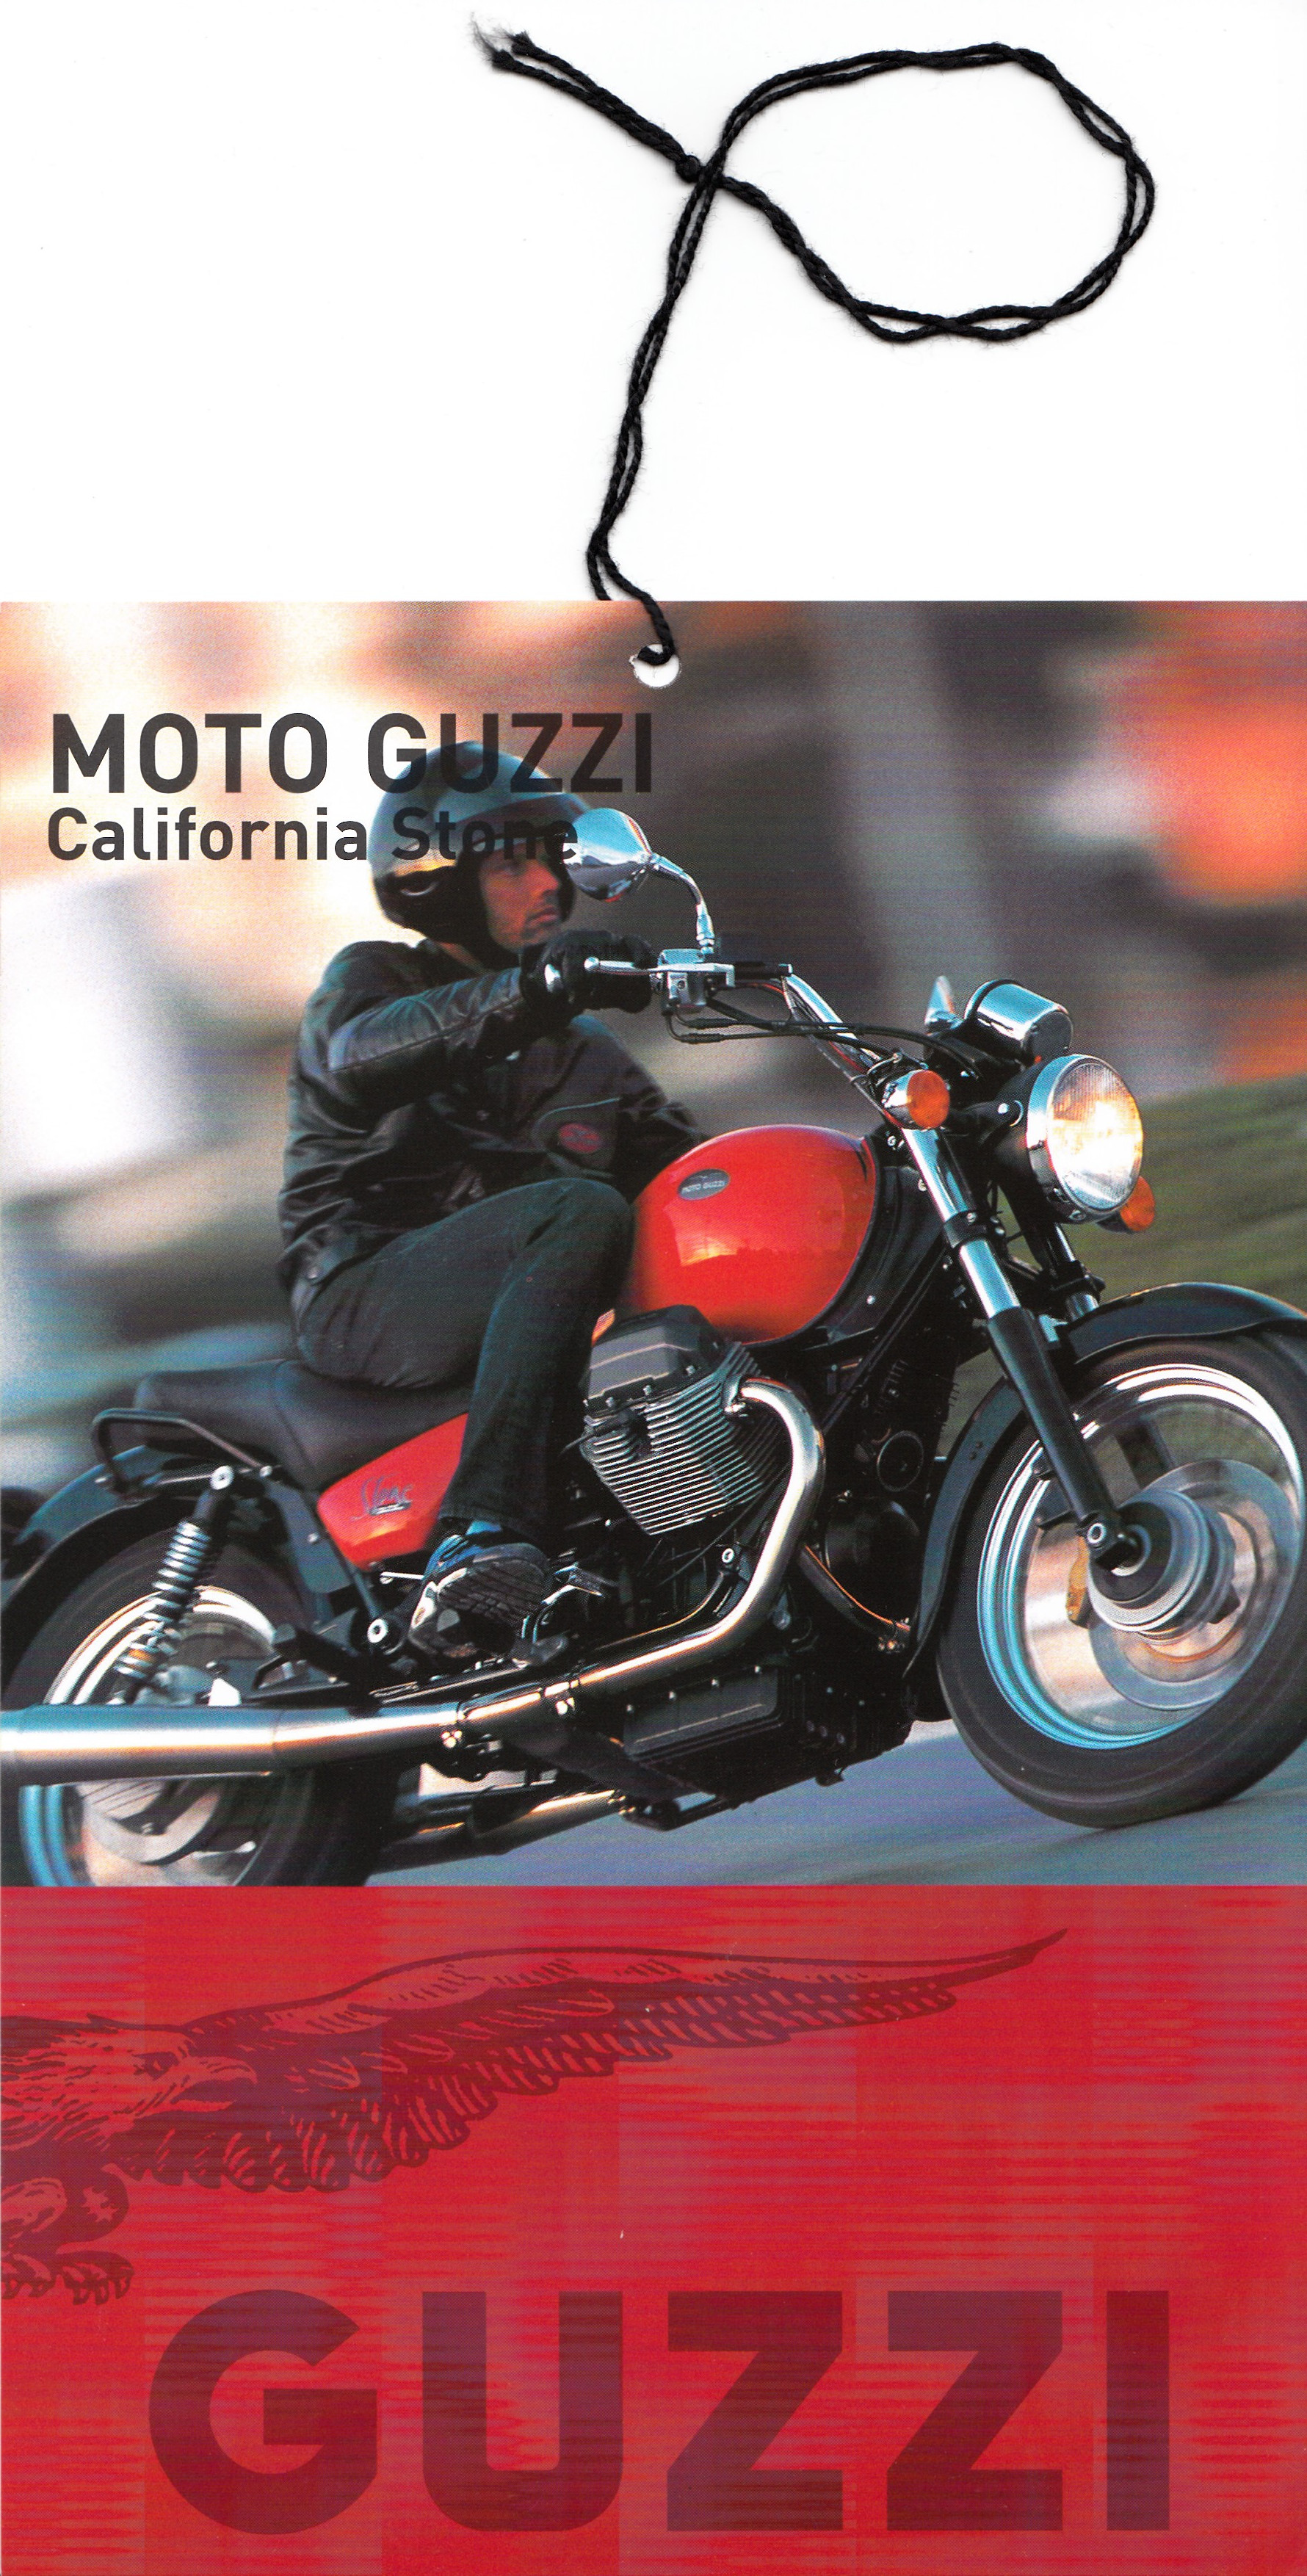 Tag - Moto Guzzi California Stone